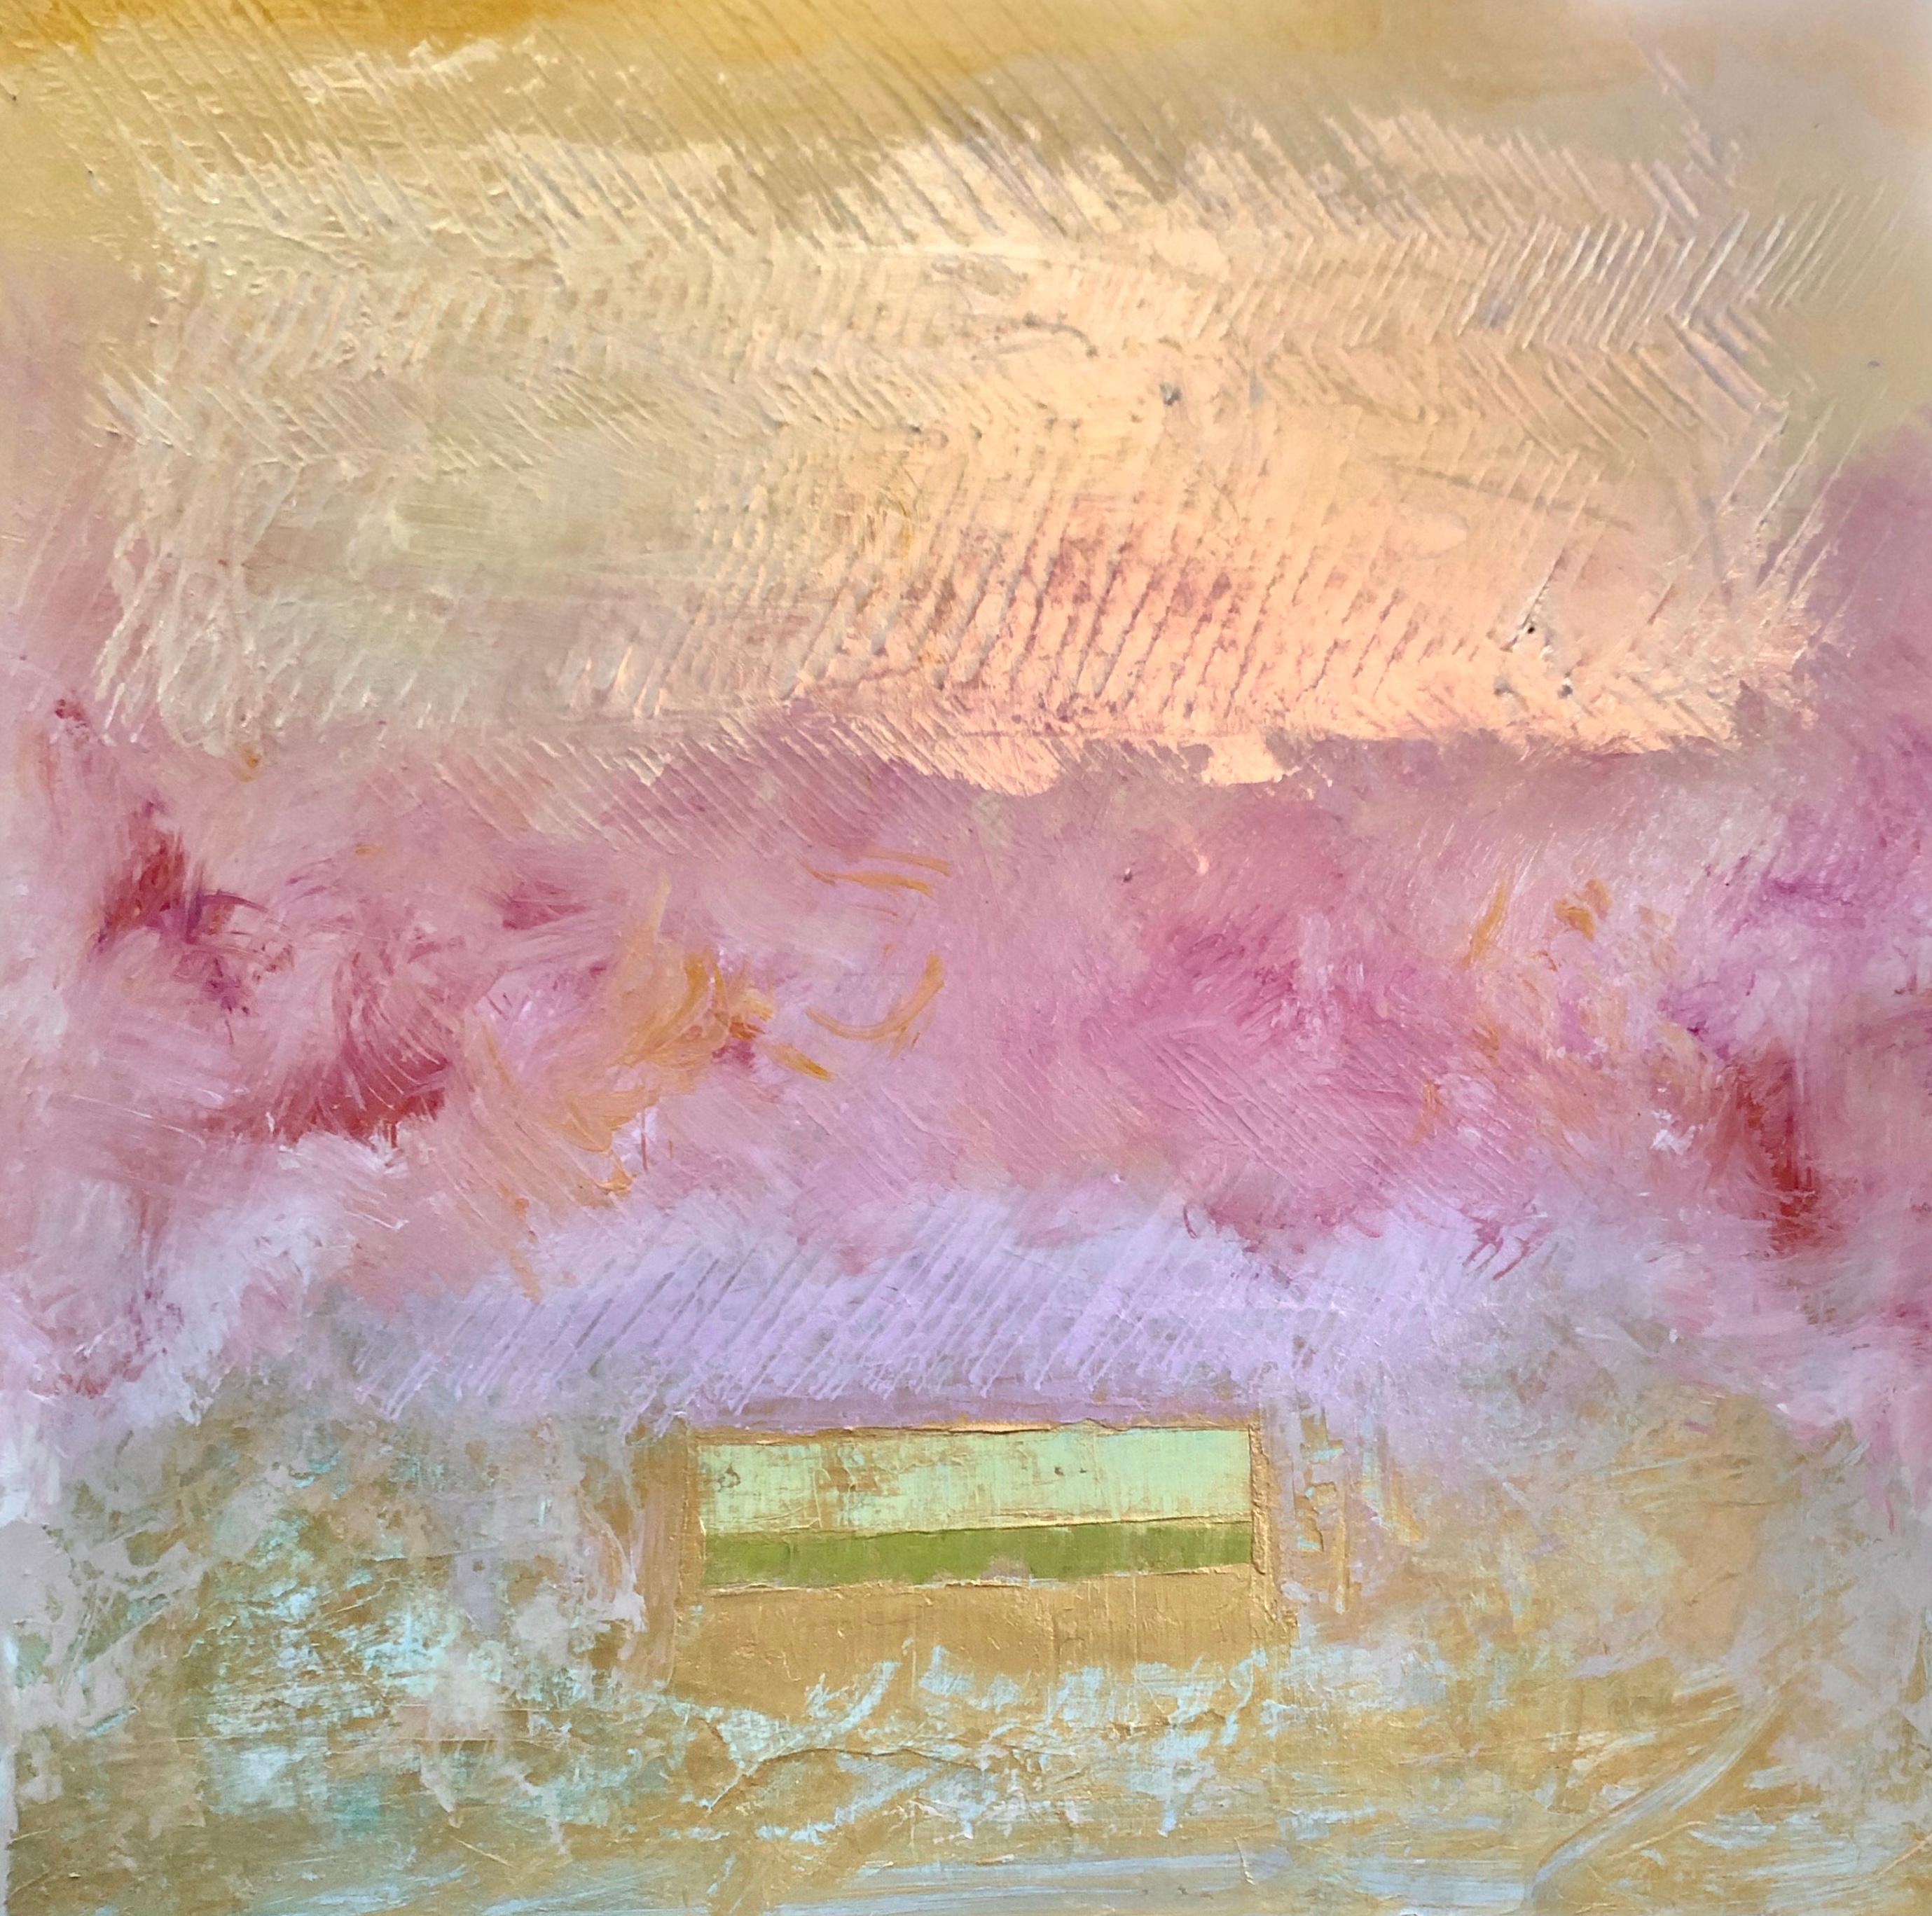 Abstract Painting Joseph McAleer - Le cadeau : peinture impressionniste abstraite en champ de couleur sur toile en rose et or